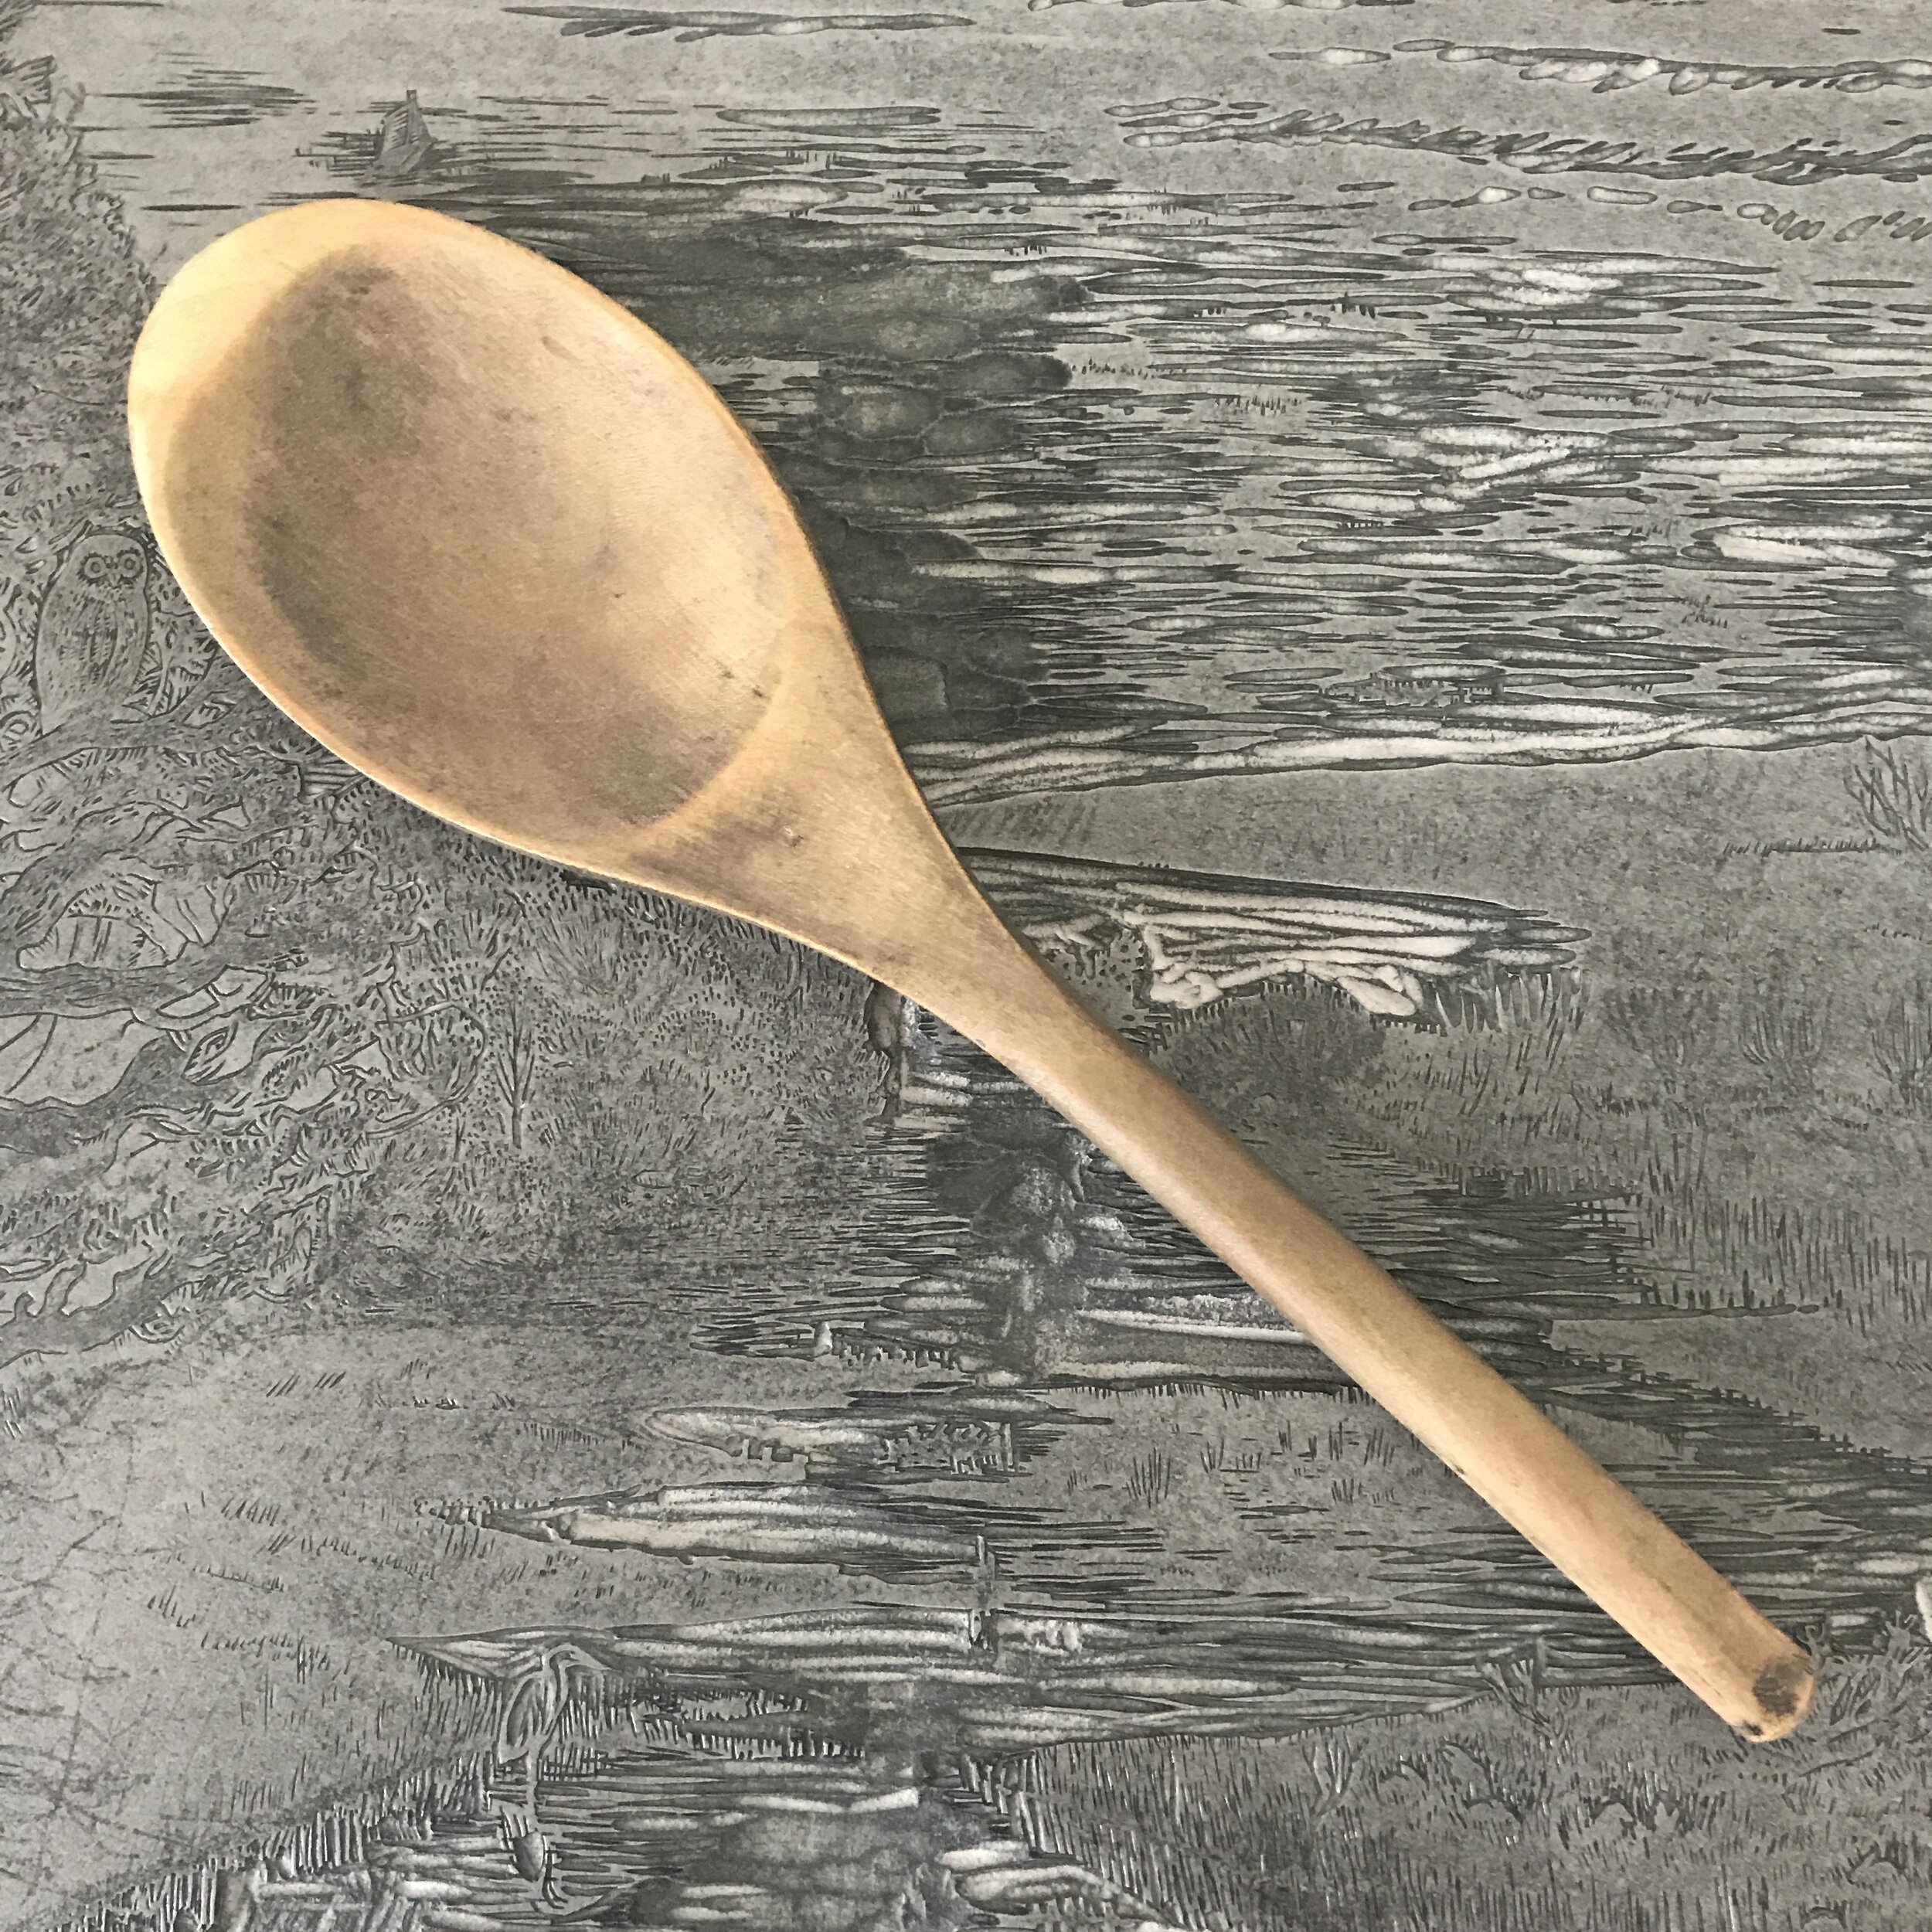 My trusty wooden spoon